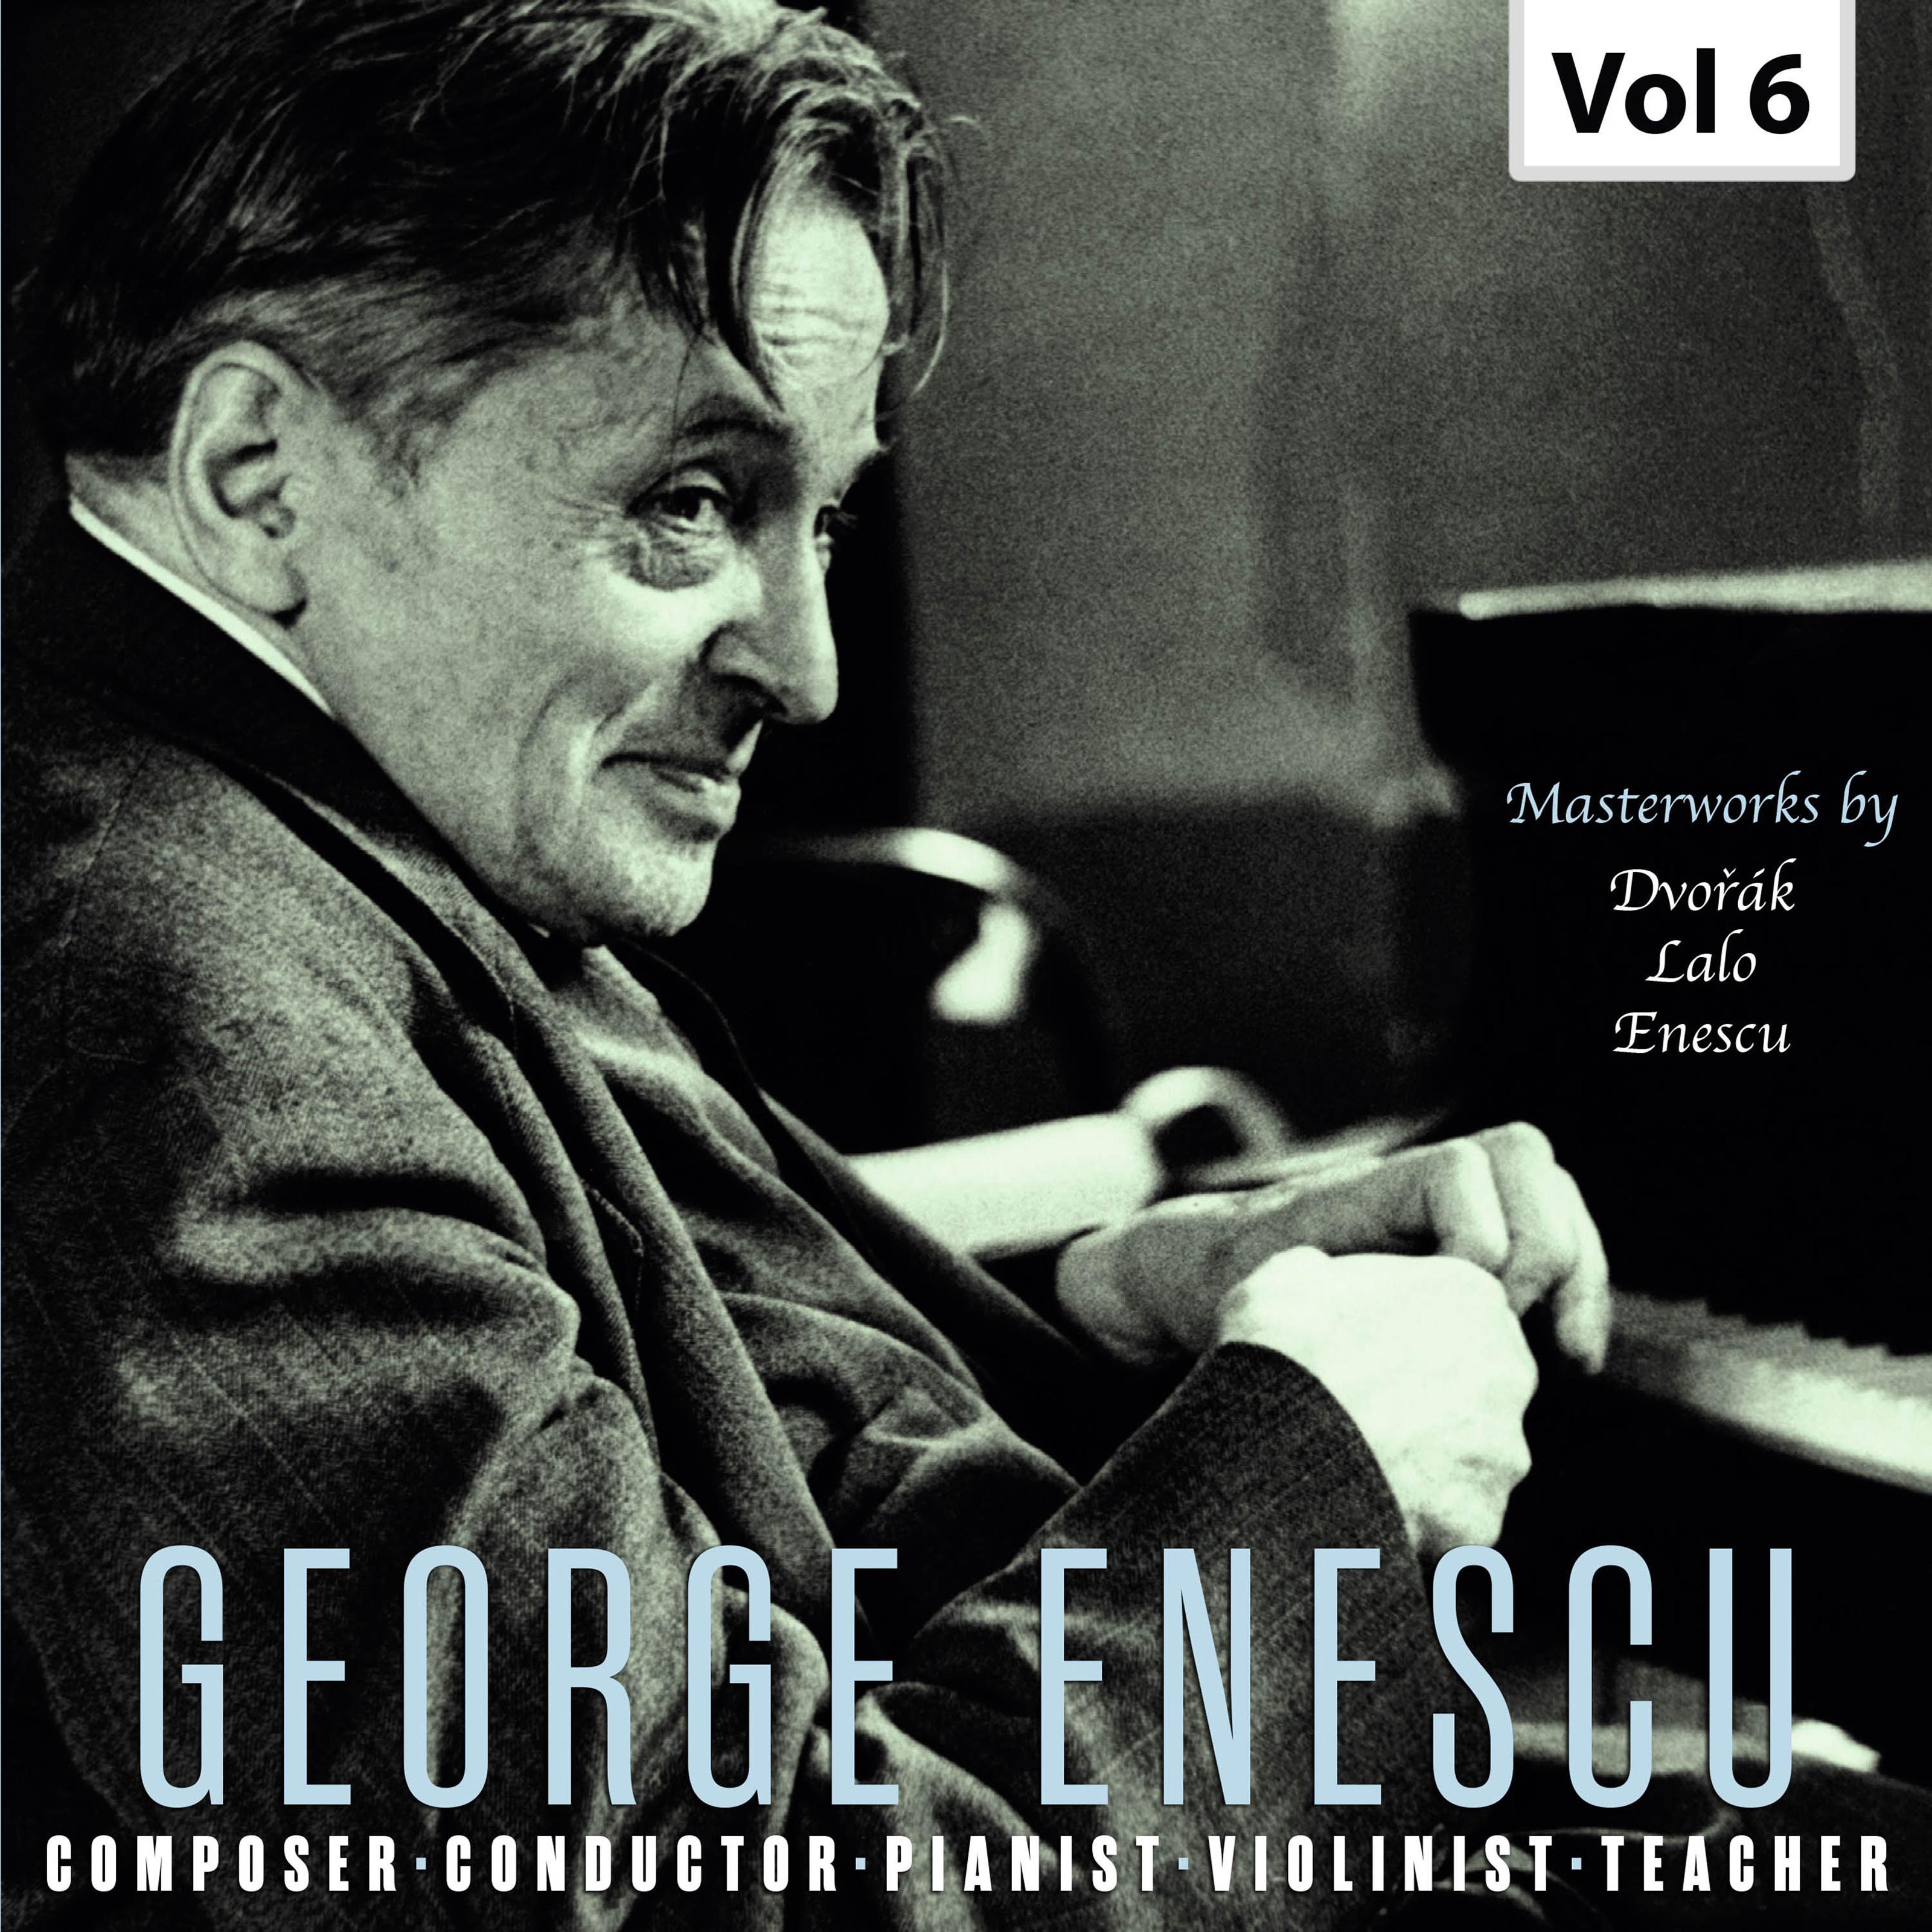 Enescu: Composer, Conductor, Pianist, Violinist & Teacher, Vol. 6